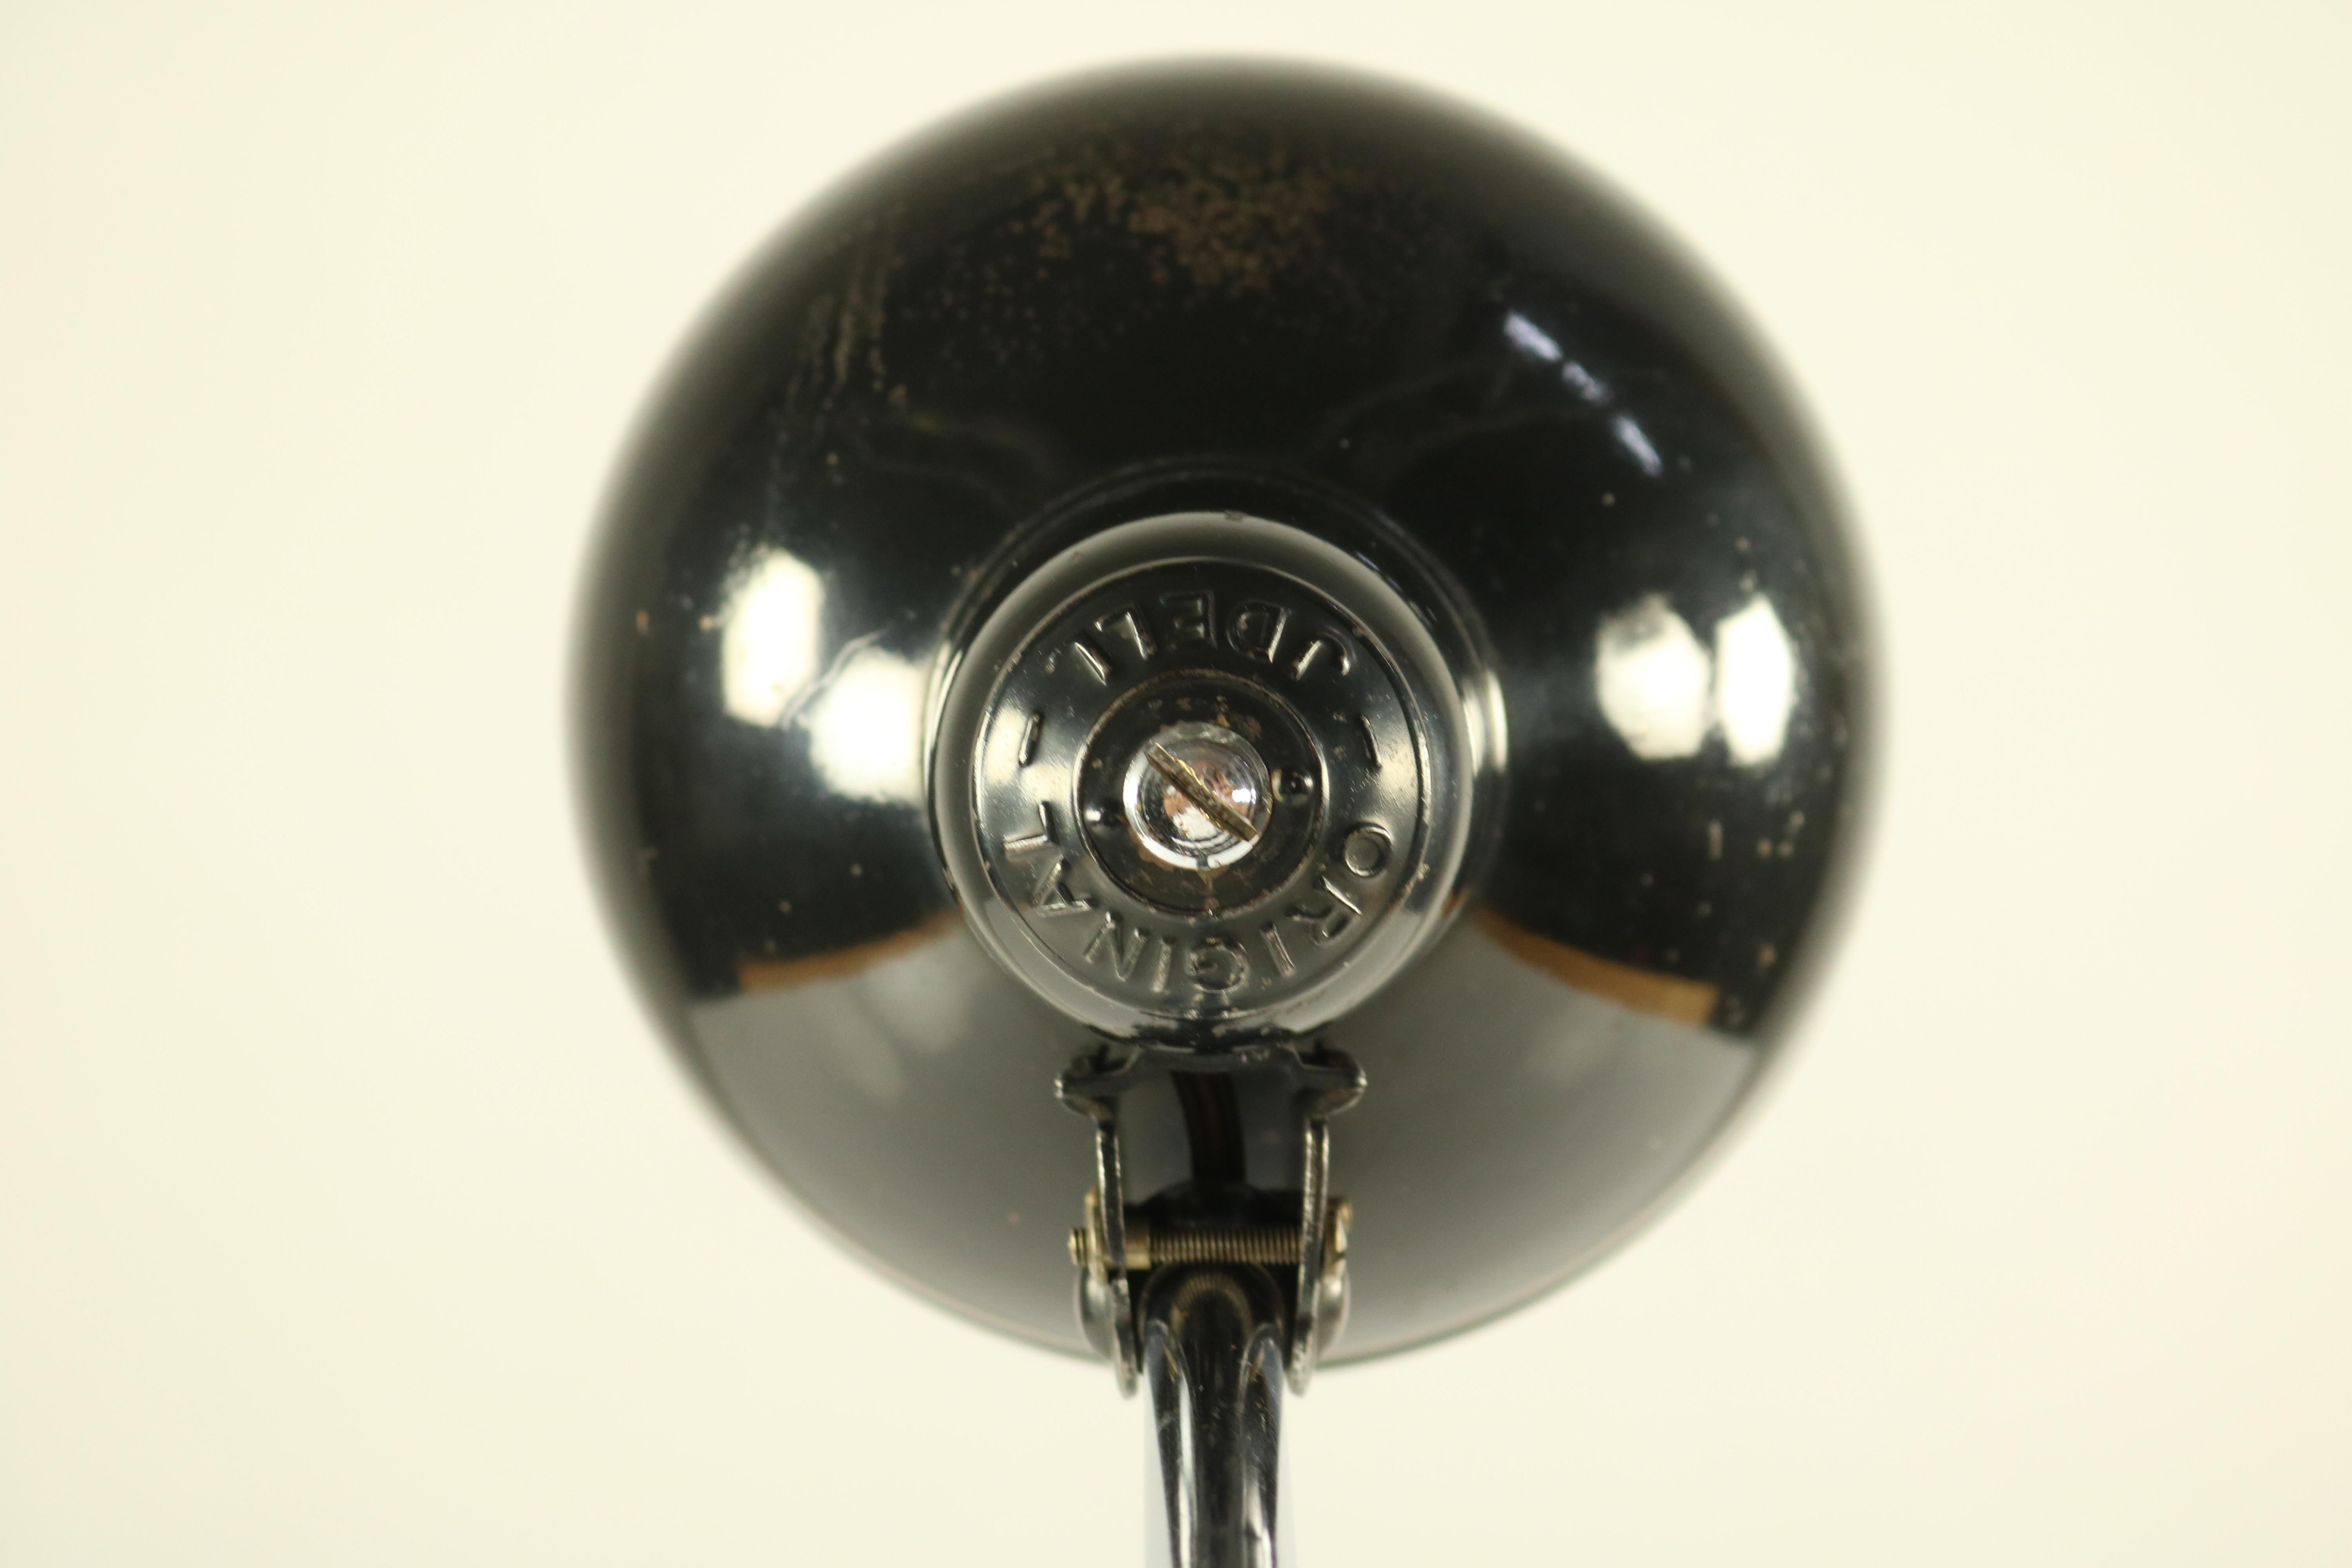 German Christian Dell Desk Lamp by Kaiser Idell Bauhaus, 1930s Design, 1934 Model 6607 For Sale